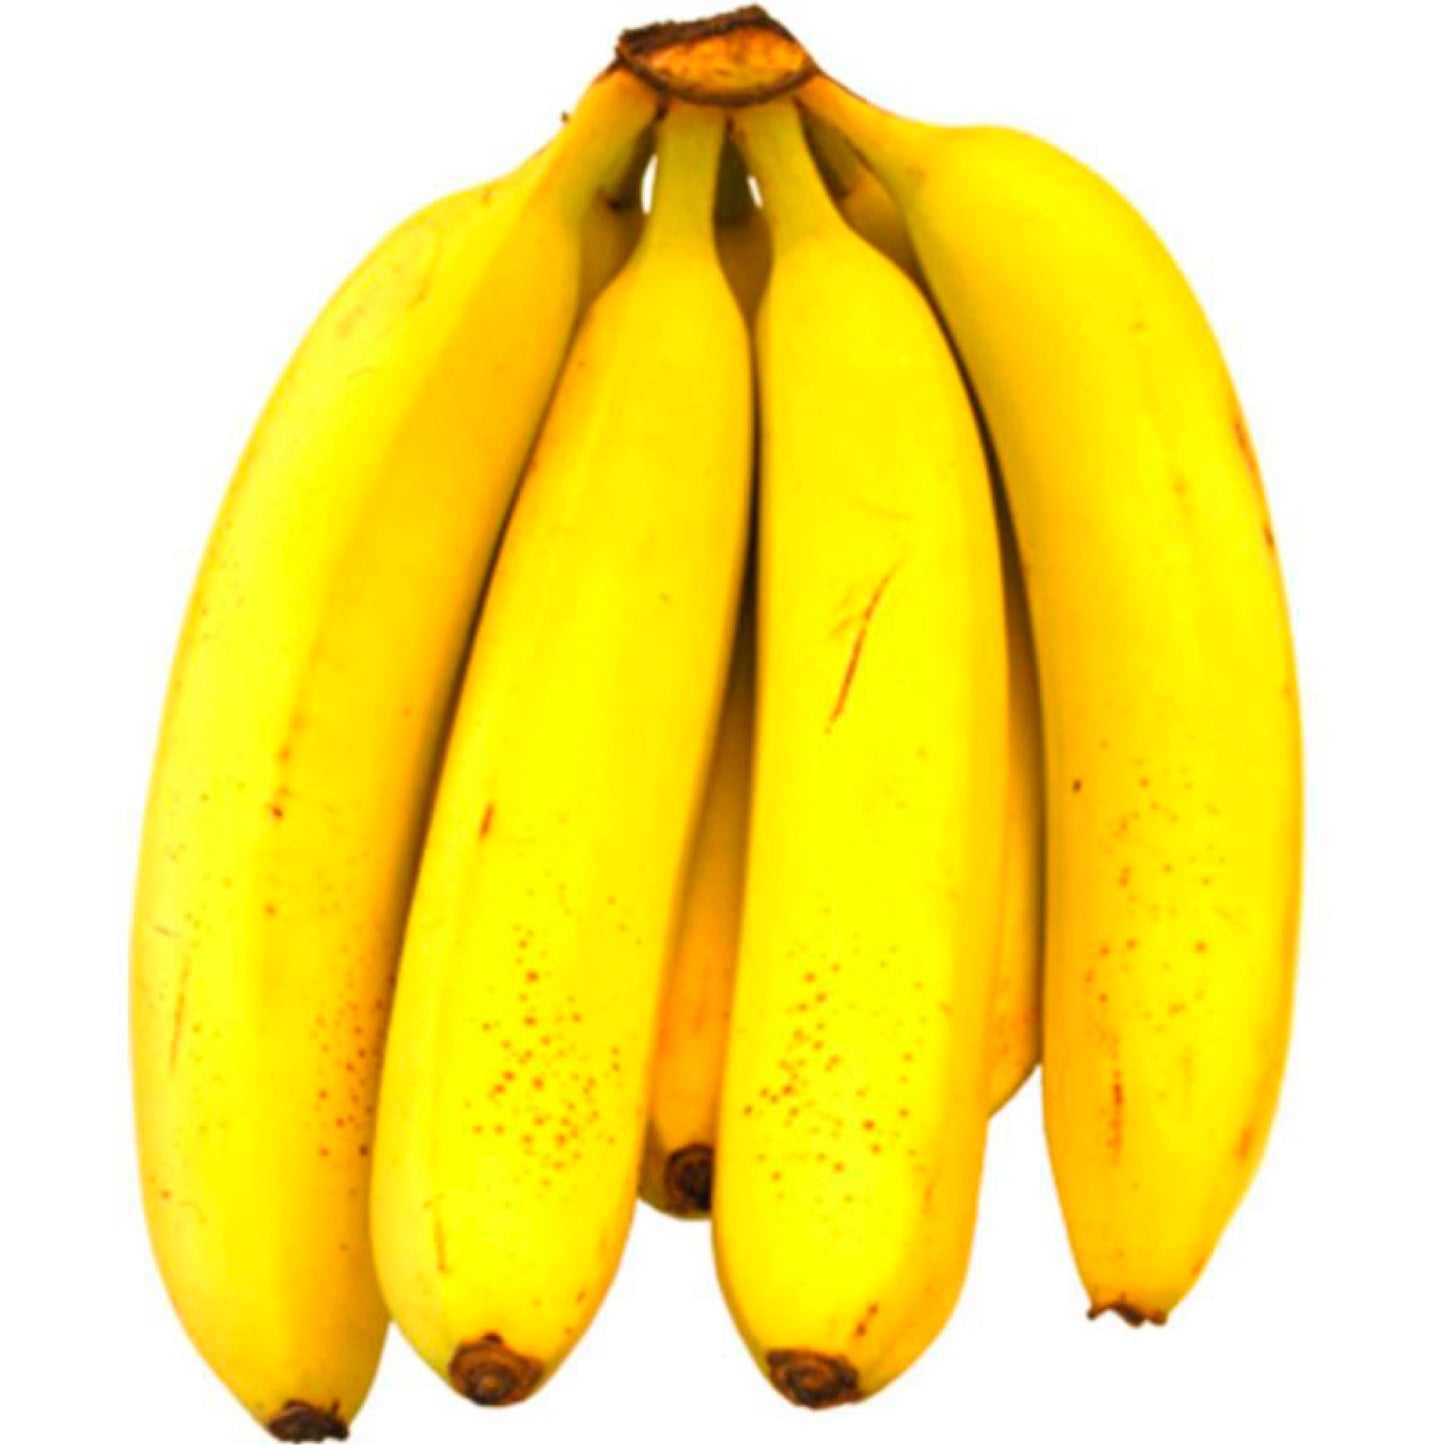 Banano libra OFERTA